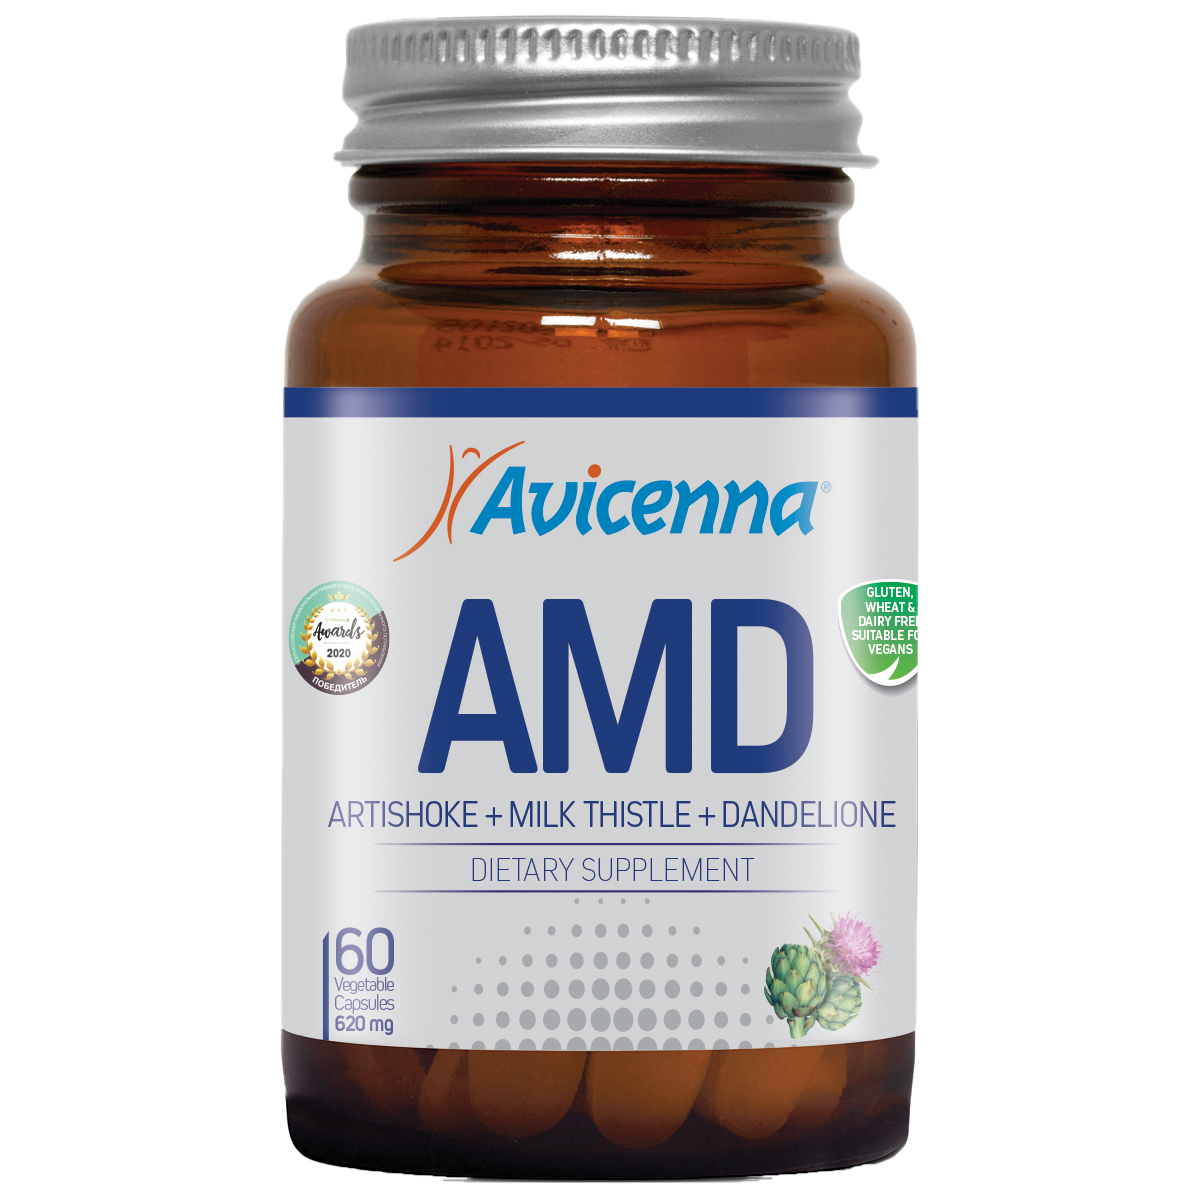 АМД (Артишок Молочный чертополох Одуванчик), 60 капсул, Avicenna